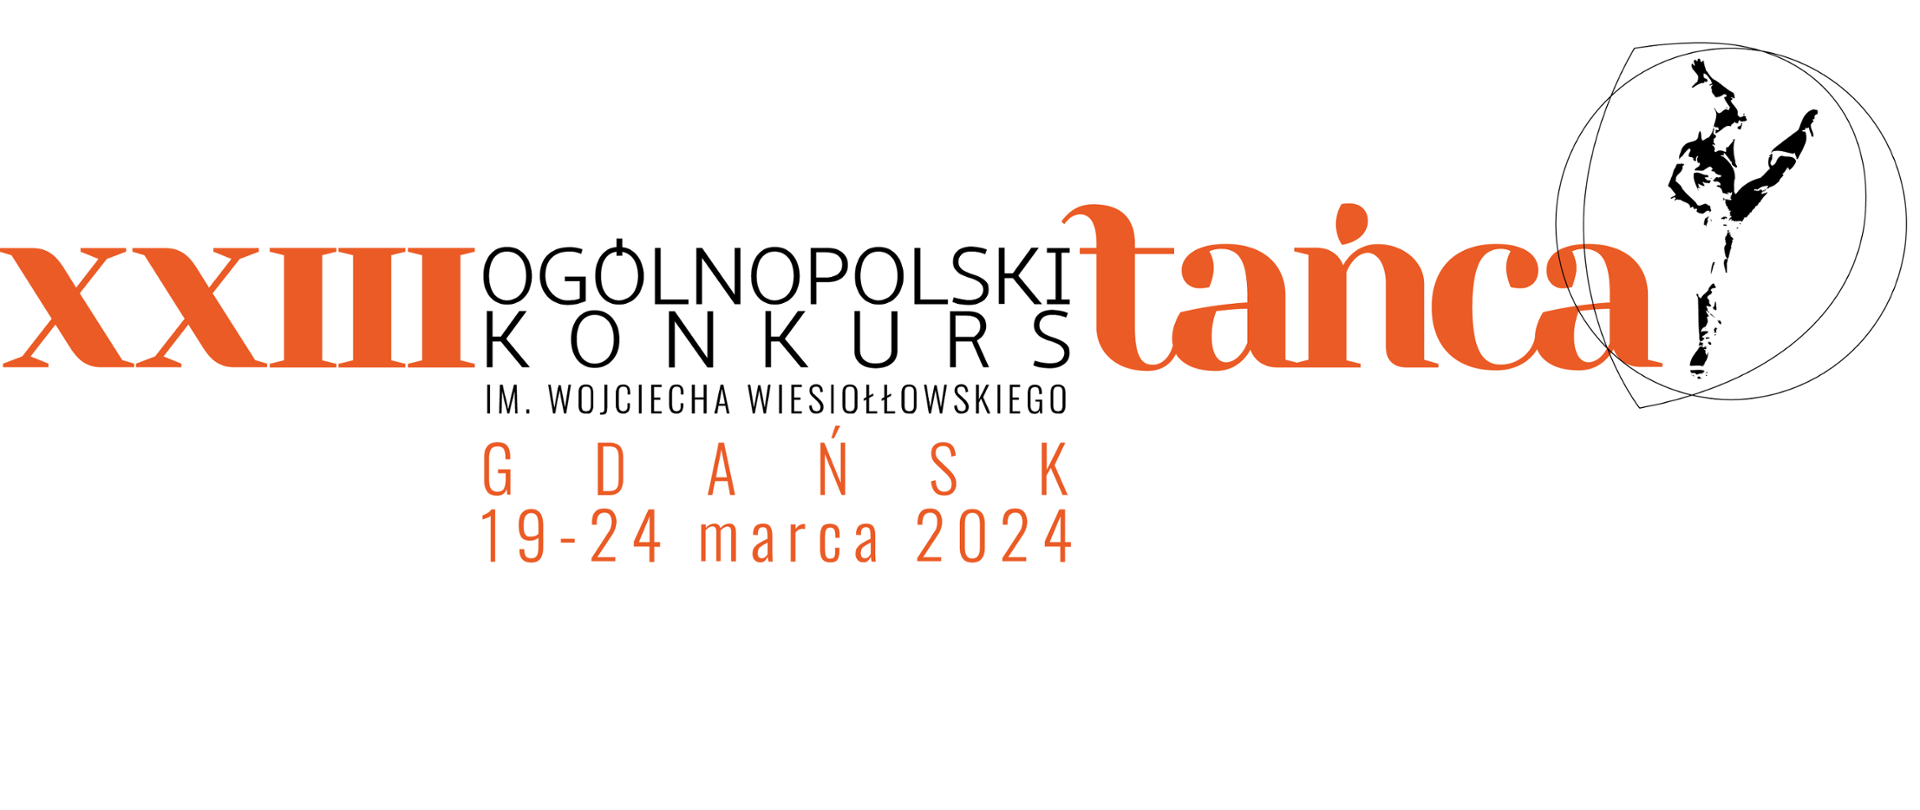 Inauguracja XXIII Ogólnopolskiego Konkursu Tańca im. Wojciecha Wiesiołłowskieg Gdańsk 2024